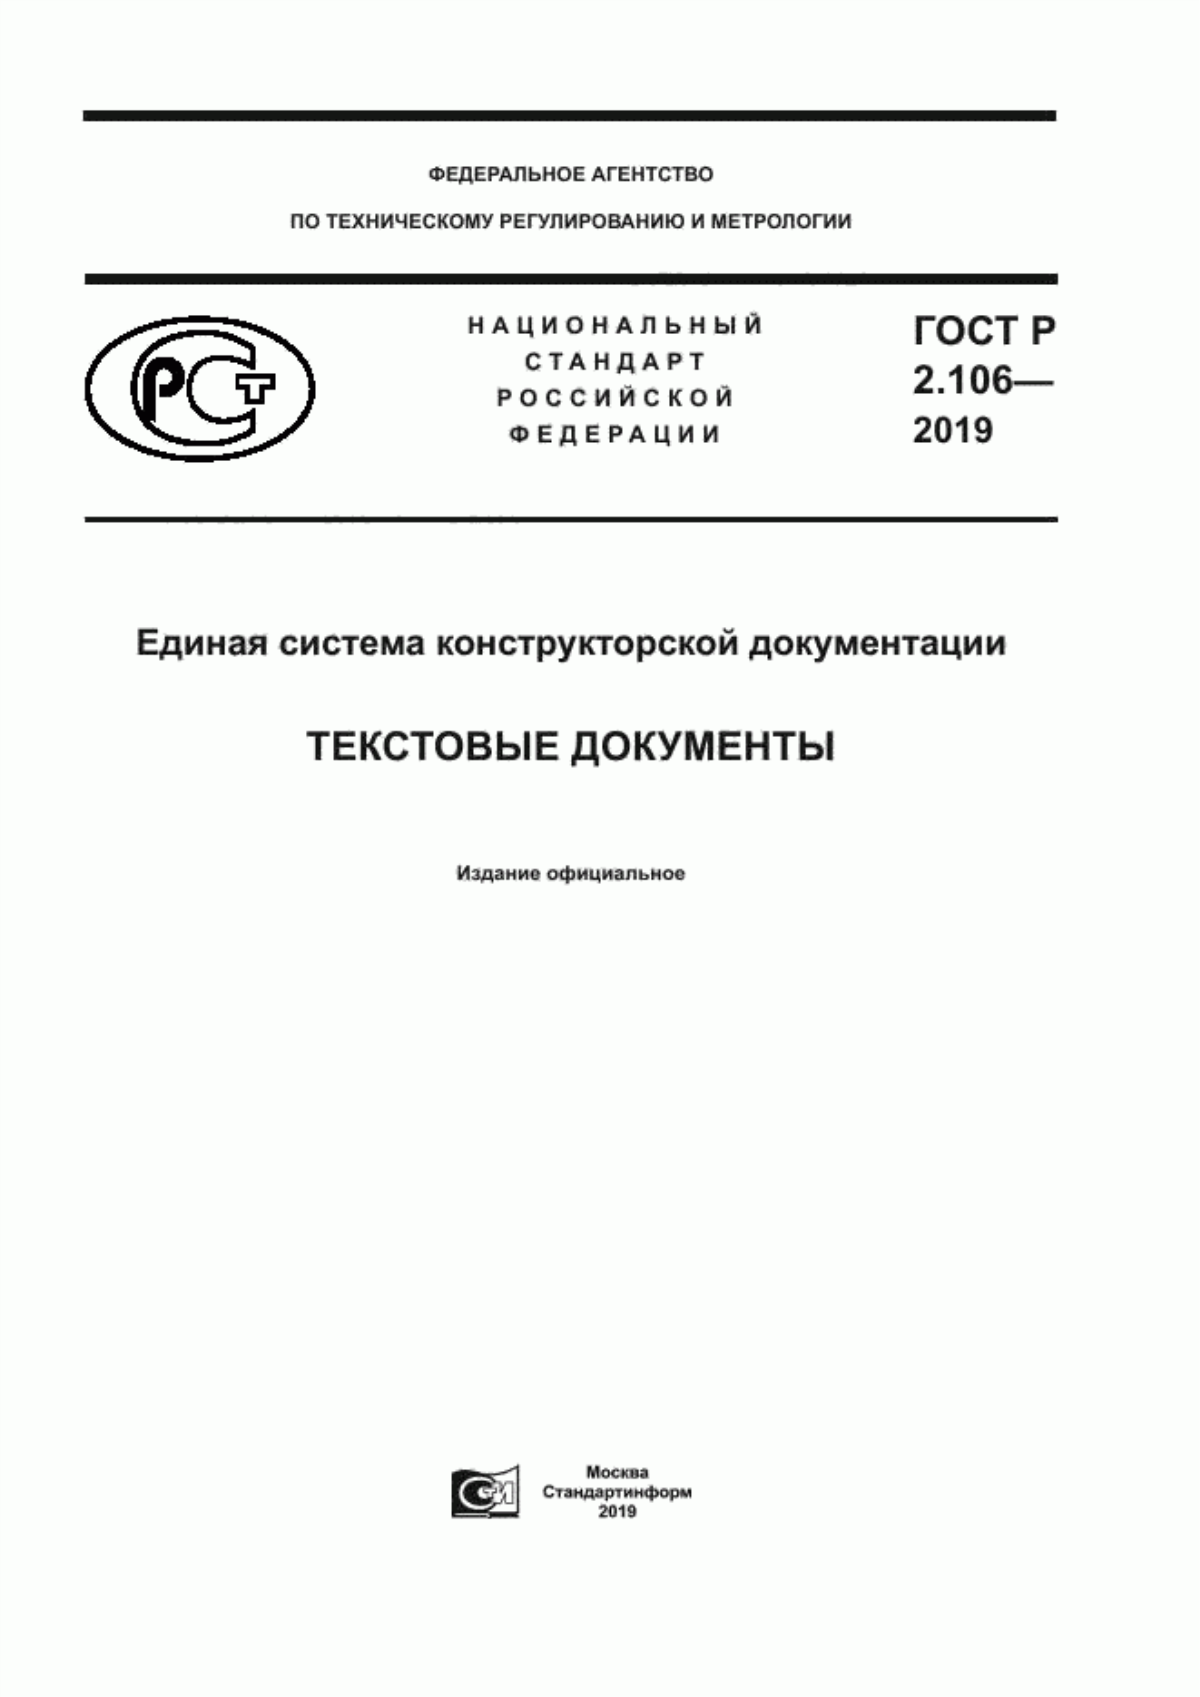 ГОСТ Р 2.106-2019 Единая система конструкторской документации. Текстовые документы